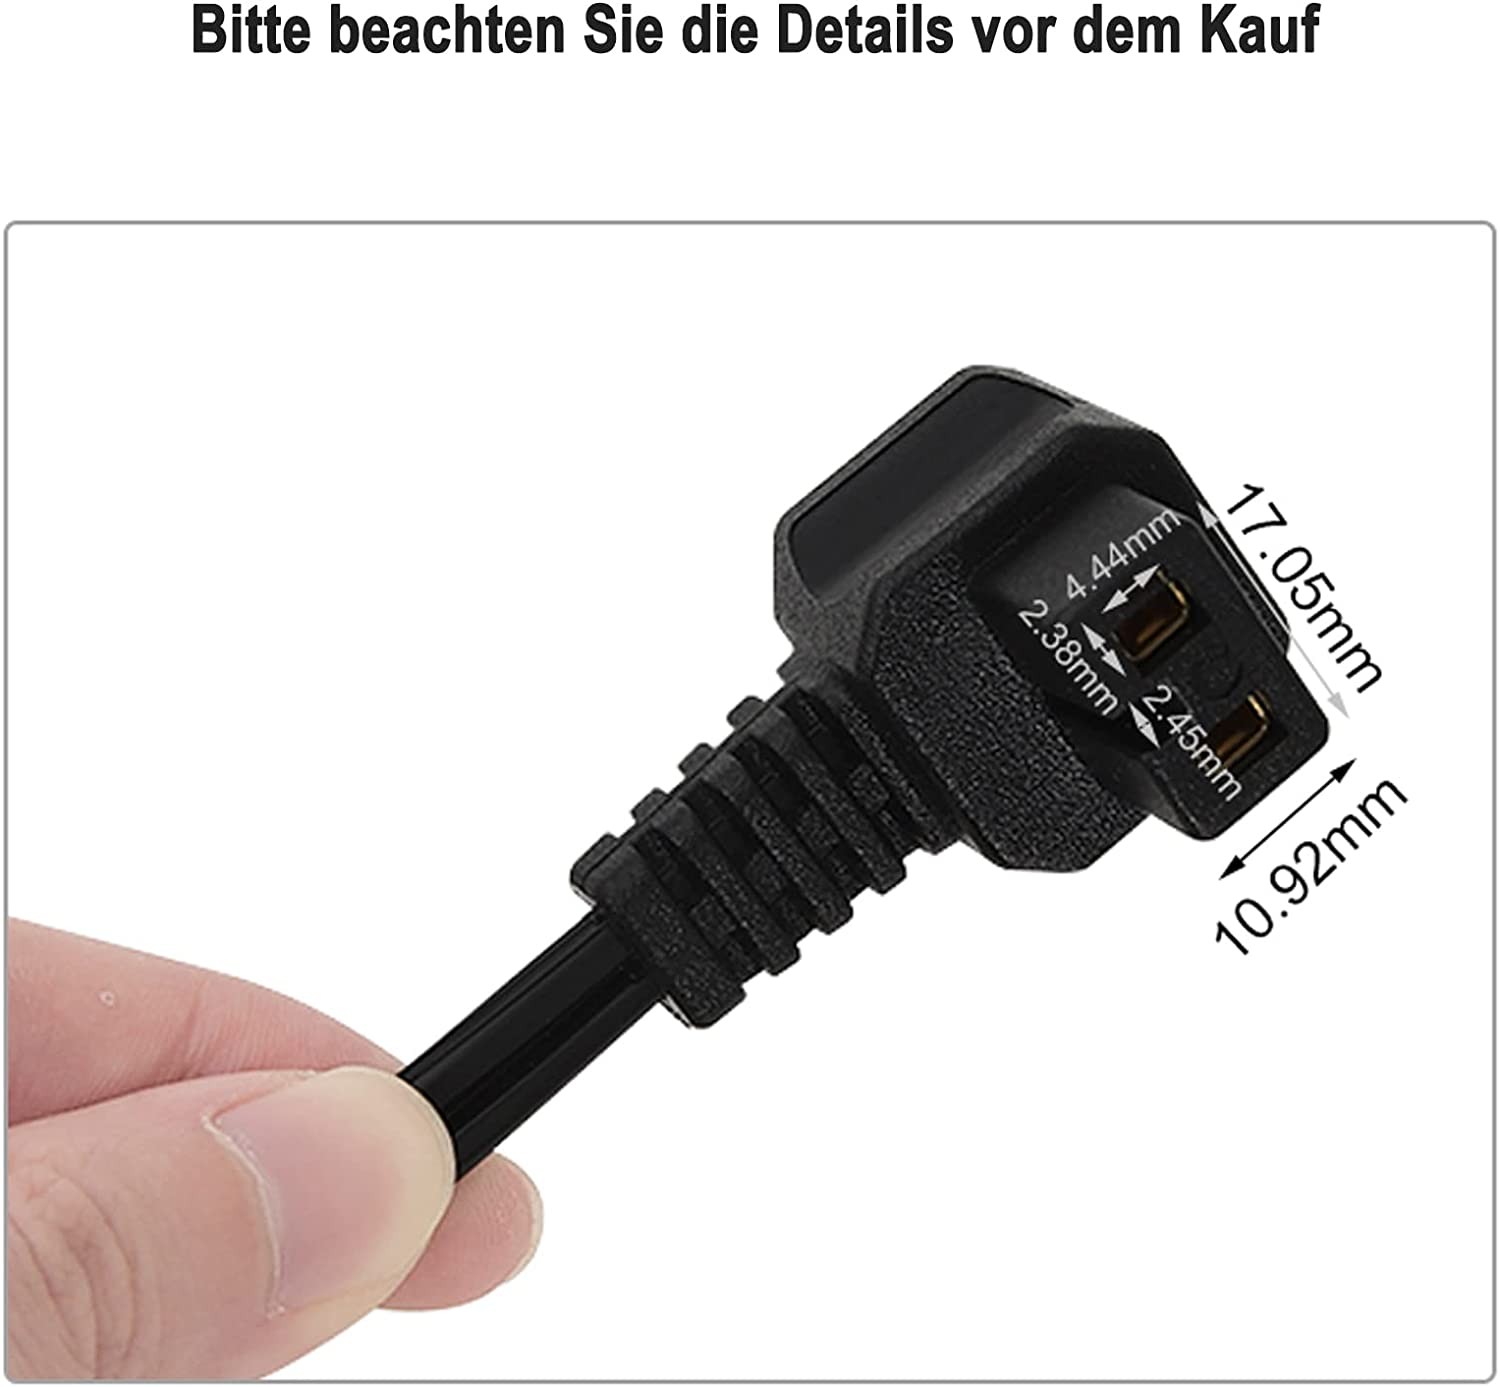 https://www.woltu.eu/media/image/08/61/65/AC-Netz-Adapter-f-r-K-hlbox-Spannungswandler-Netzgleichrichter-EZT-KUE012-C-FL-schwarz6.jpg